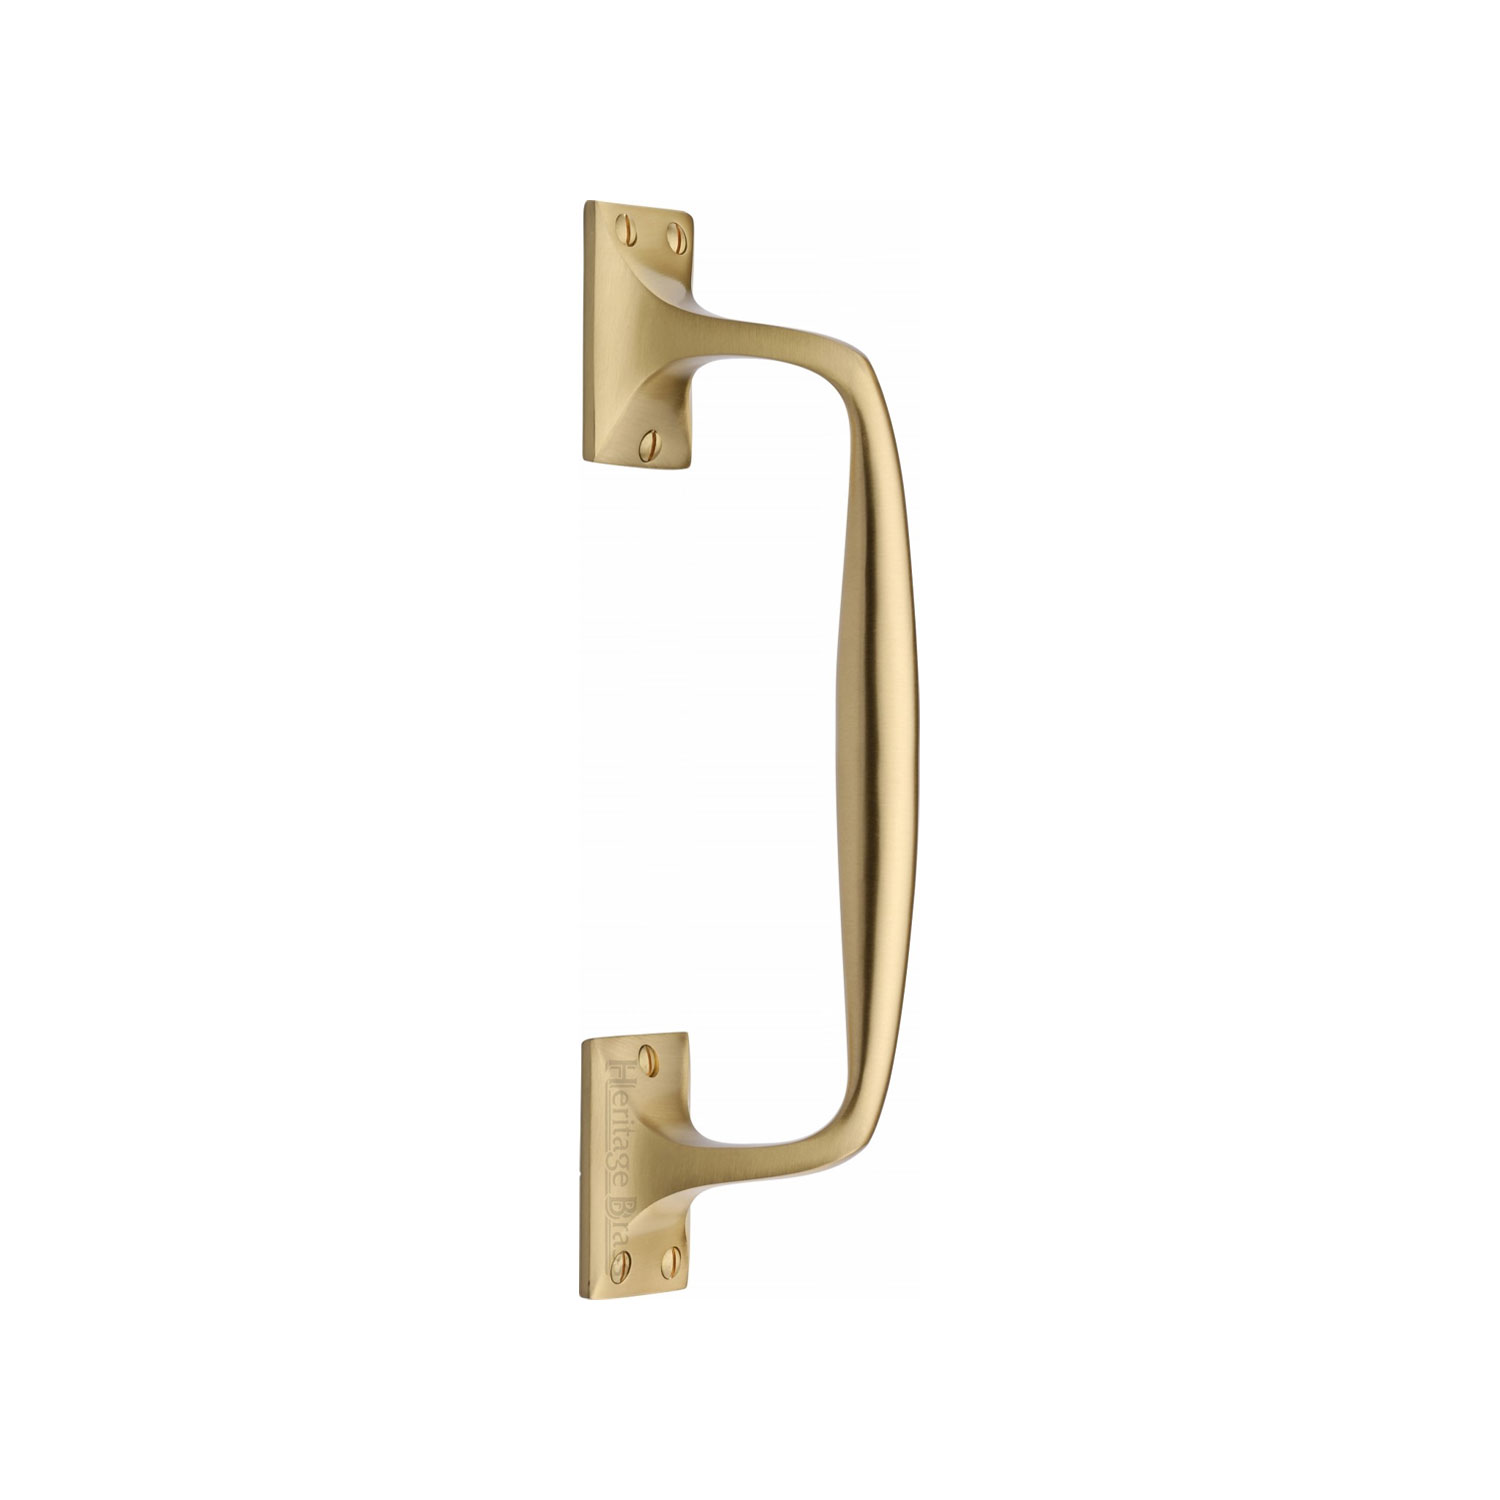 Heritage Brass Door Pull Handle Cranked Design 10"